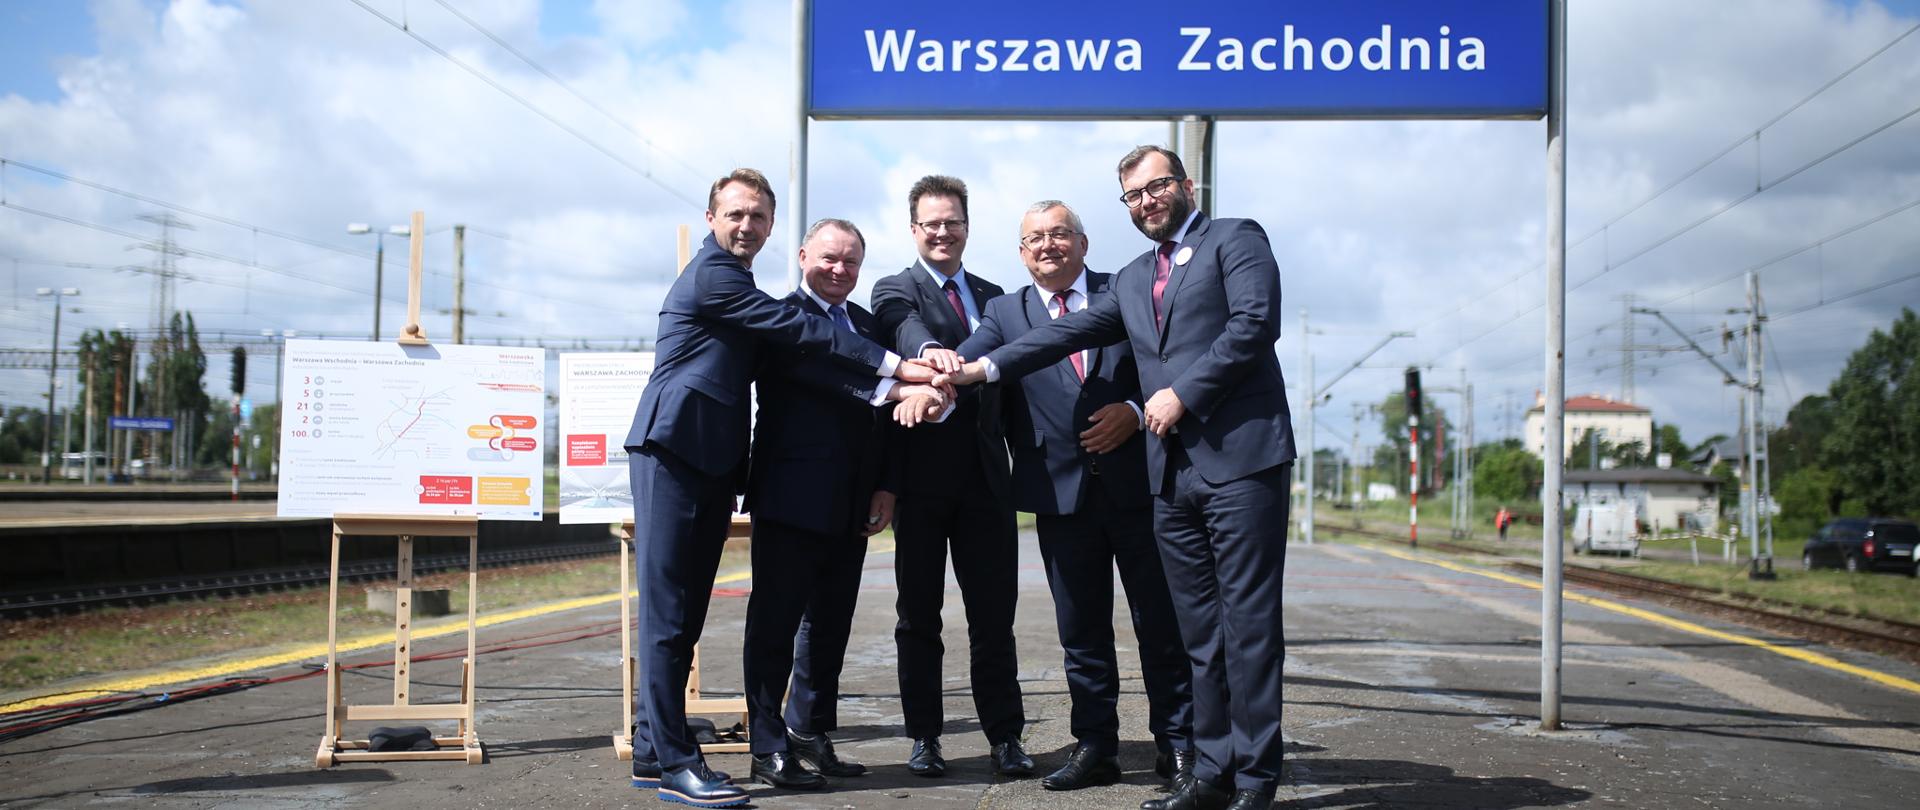 Na peronie stacji Dworca Warszawa Zachodnia stoi grupa mężczyzna wśród nichwiceminister Grzegorz Puda.